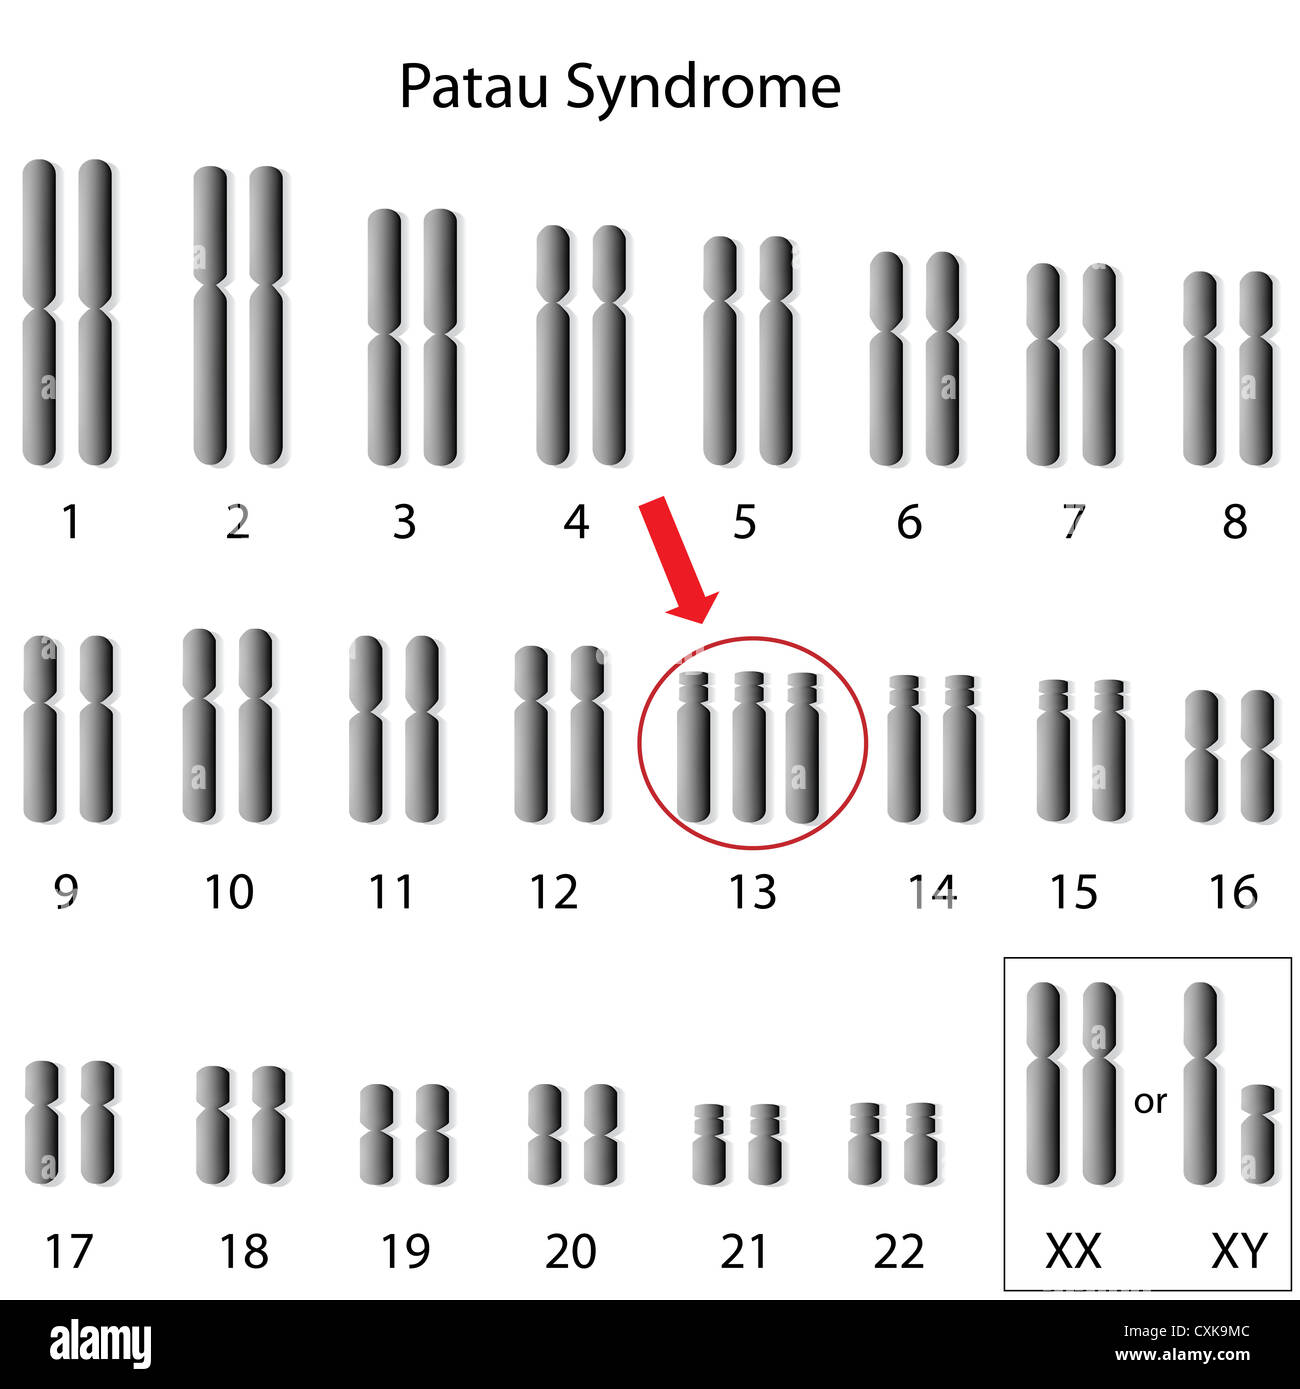 El síndrome de Patau, trisomía 13 Foto de stock